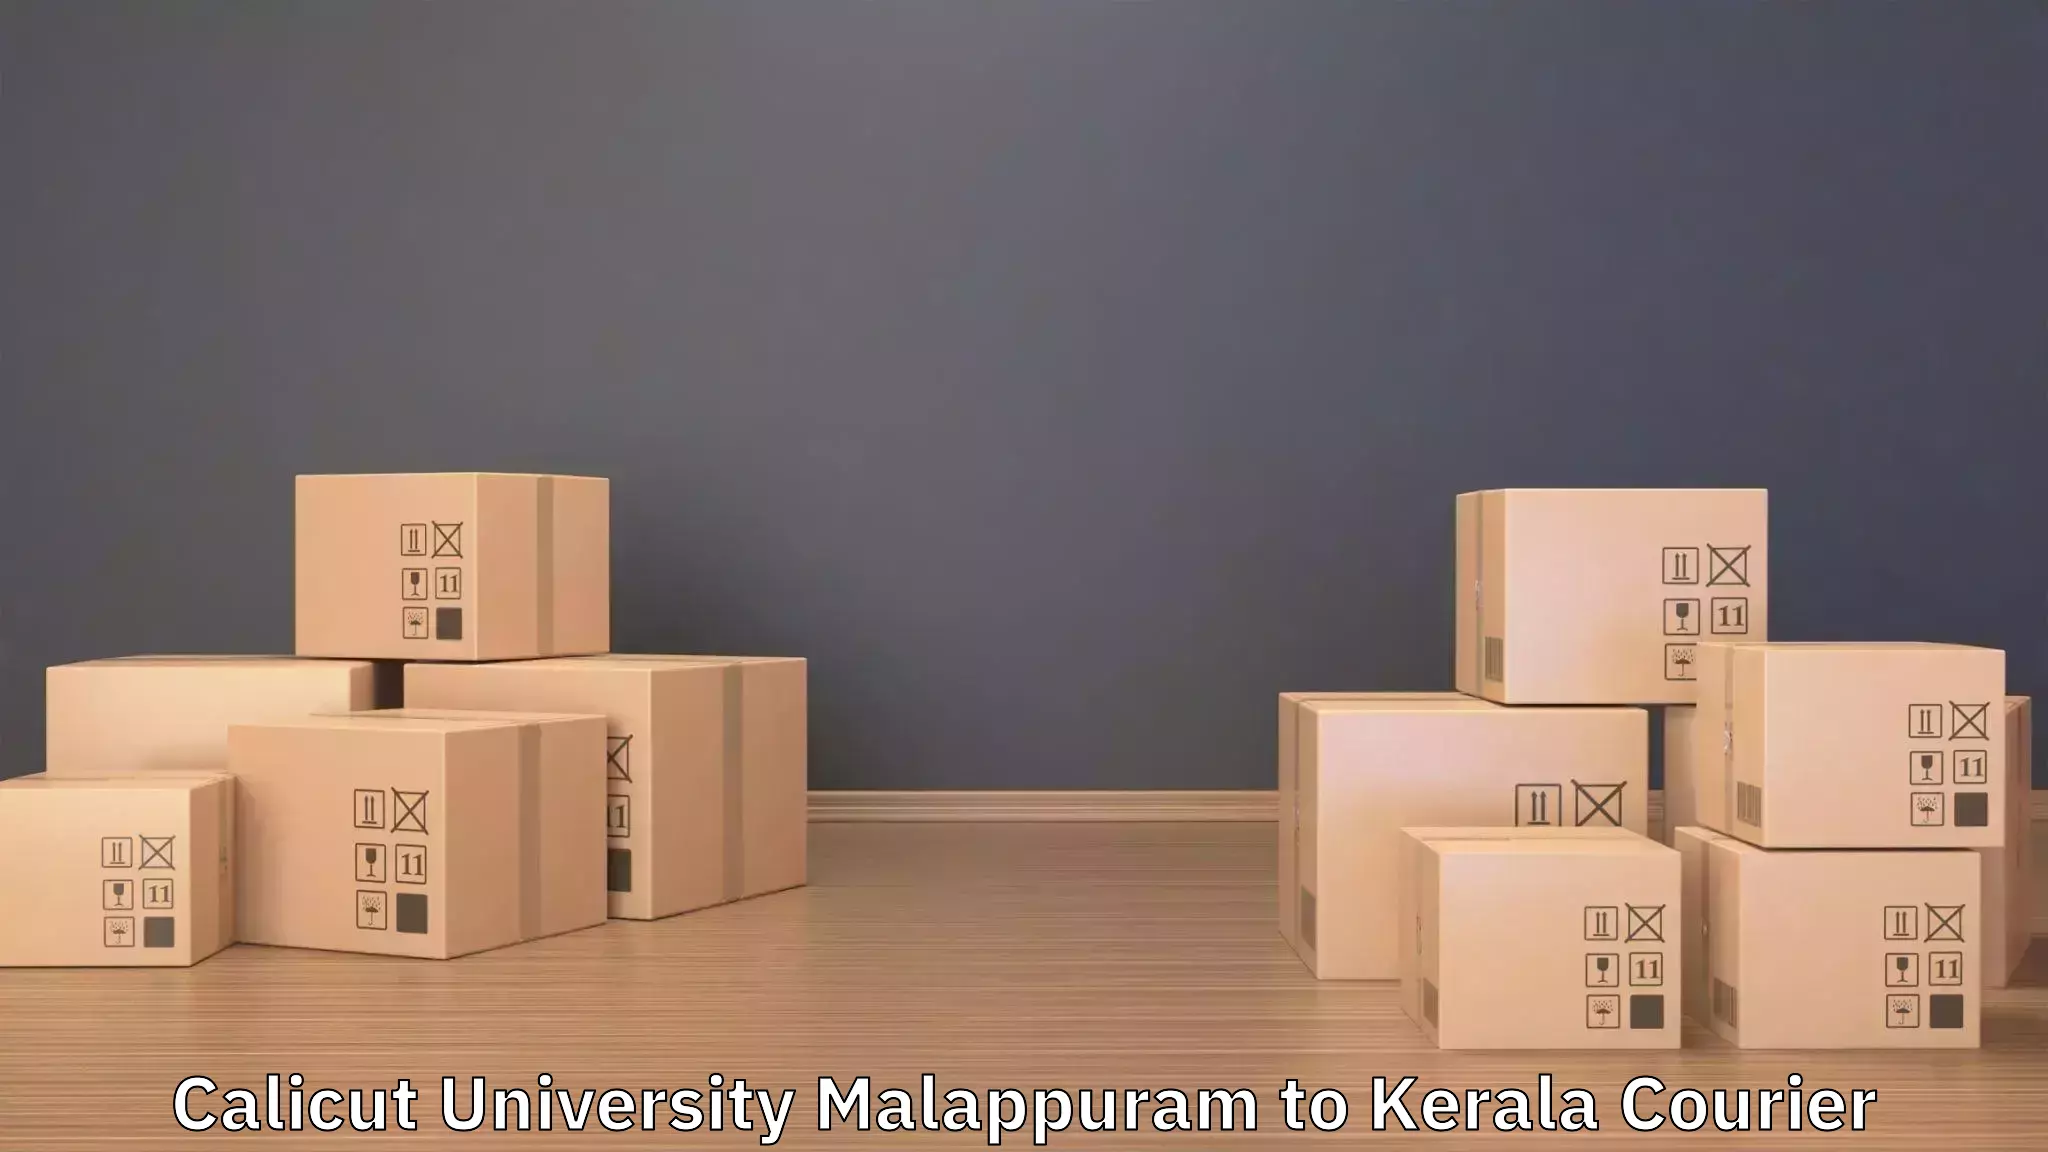 Furniture moving experts Calicut University Malappuram to Taliparamba